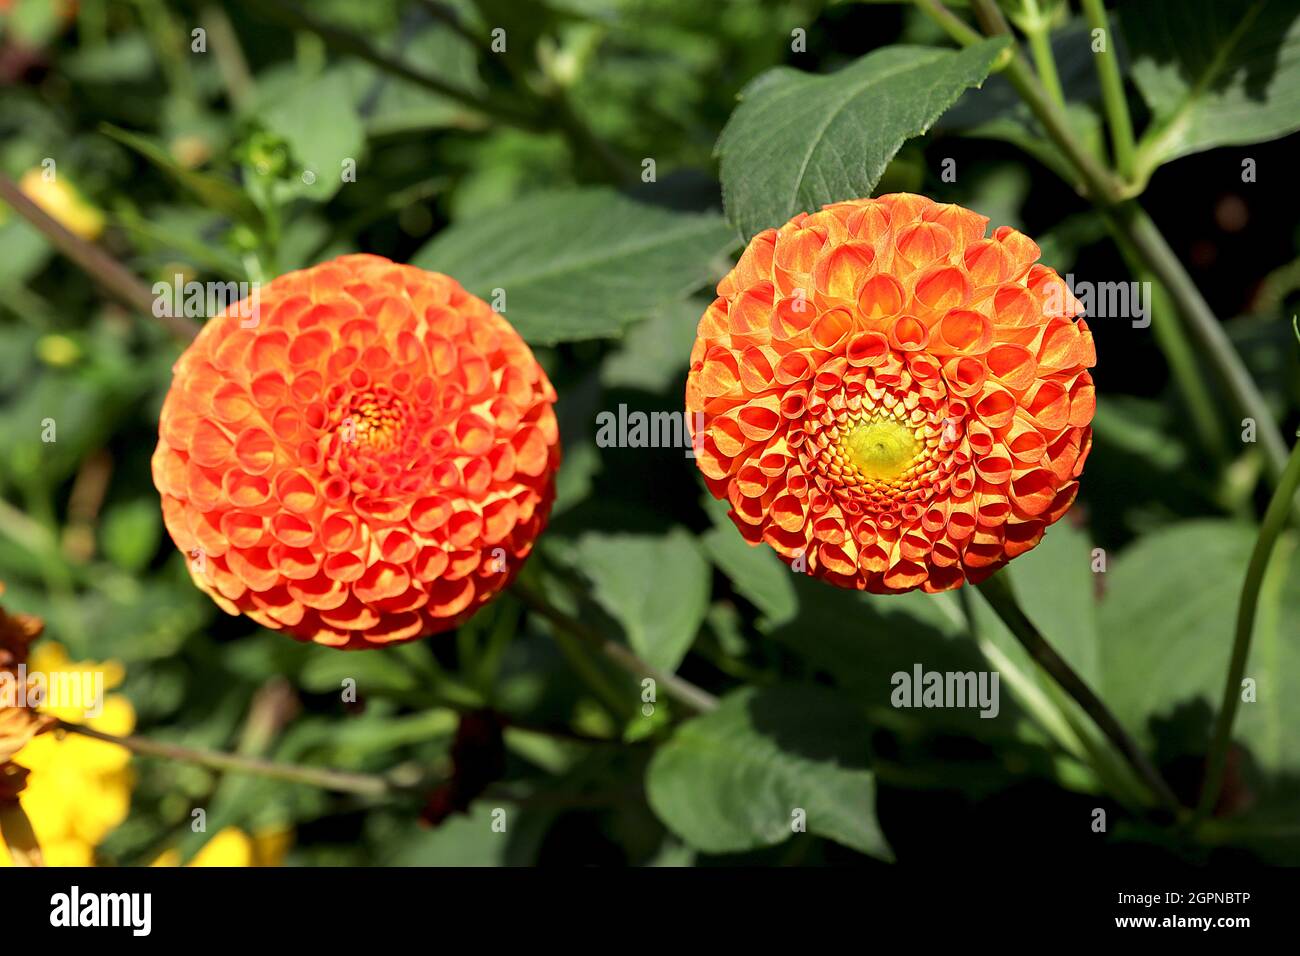 Dahlia ‘Bantling’ Pompon dahlia Gruppo 7 fiori sferici arancioni con petali arrotolati in cluster stretti, settembre, Inghilterra, Regno Unito Foto Stock